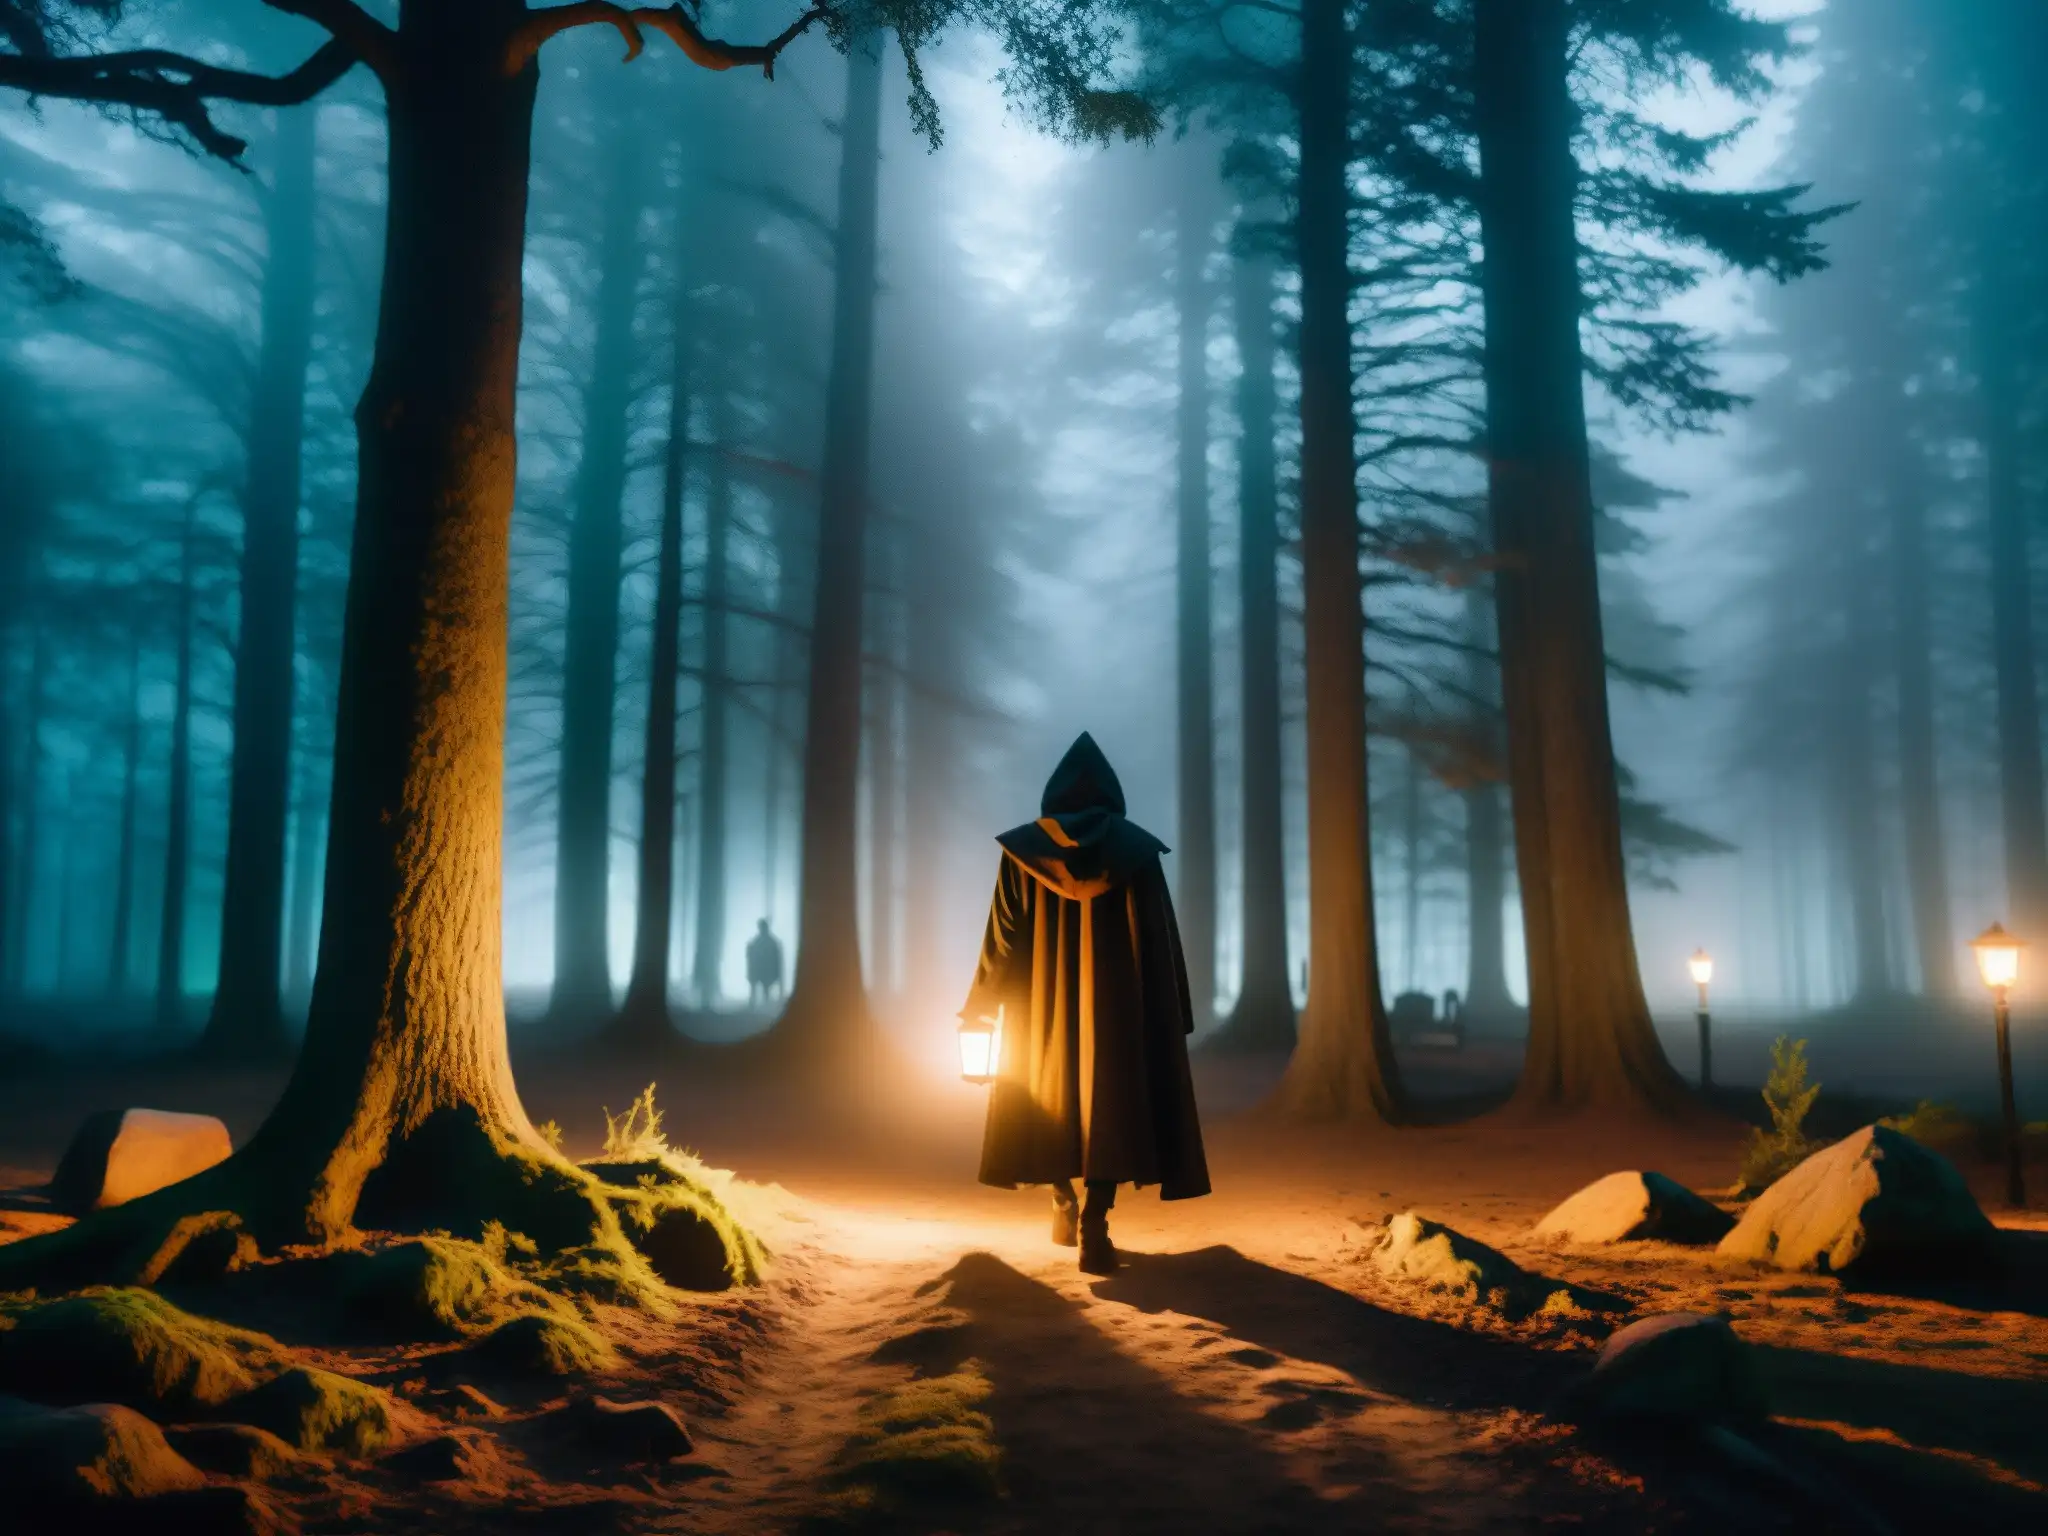 En el bosque oscuro de noche, una figura con capa y linterna